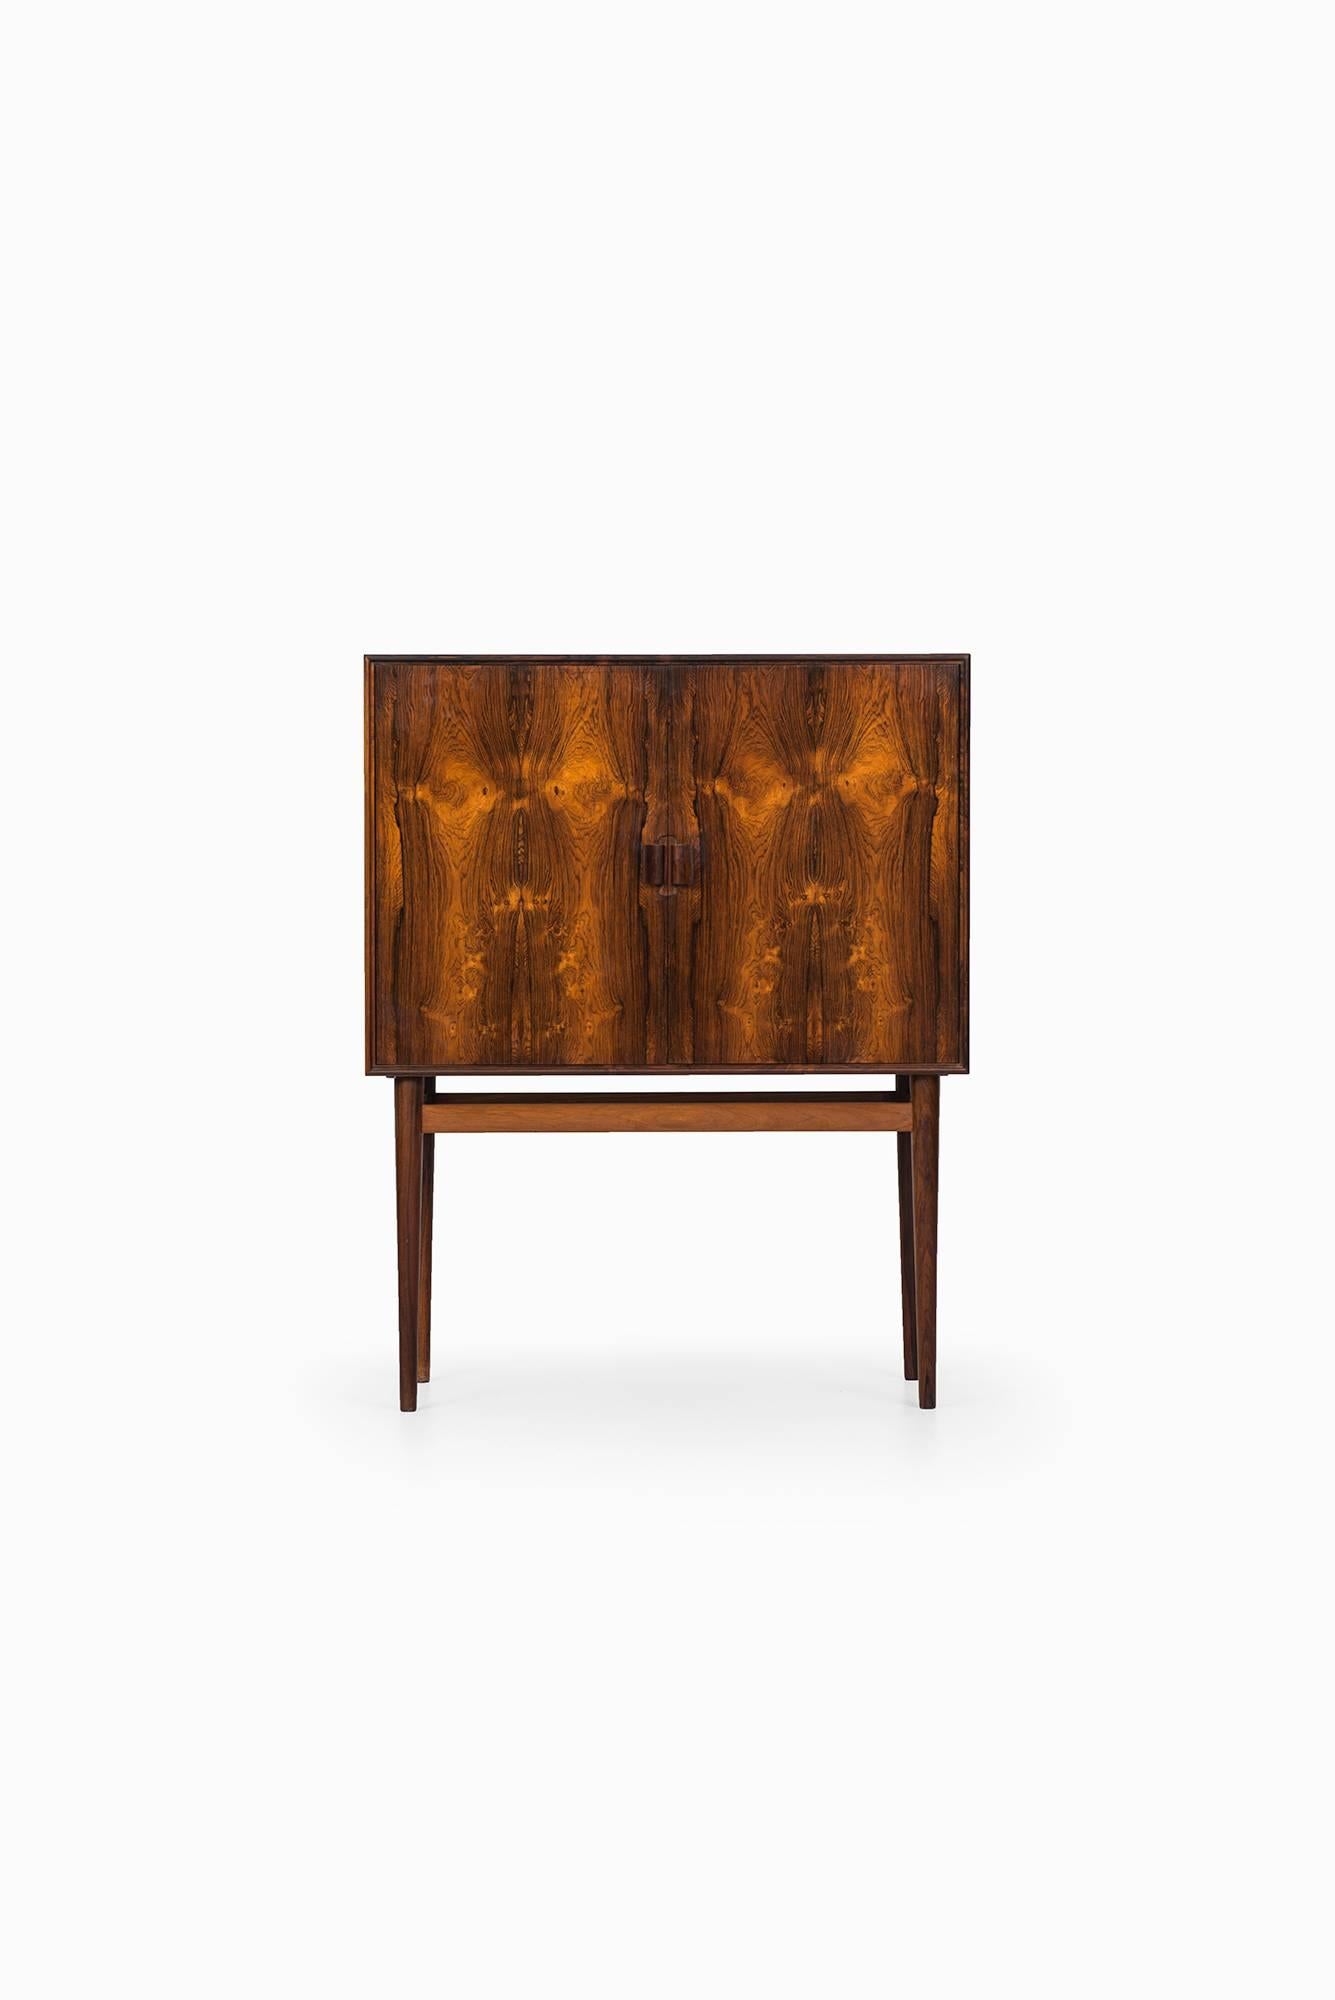 Rare bar cabinet model 63 designed by Helge Vestergaard-Jensen. Produced by Jason møbler in Denmark.